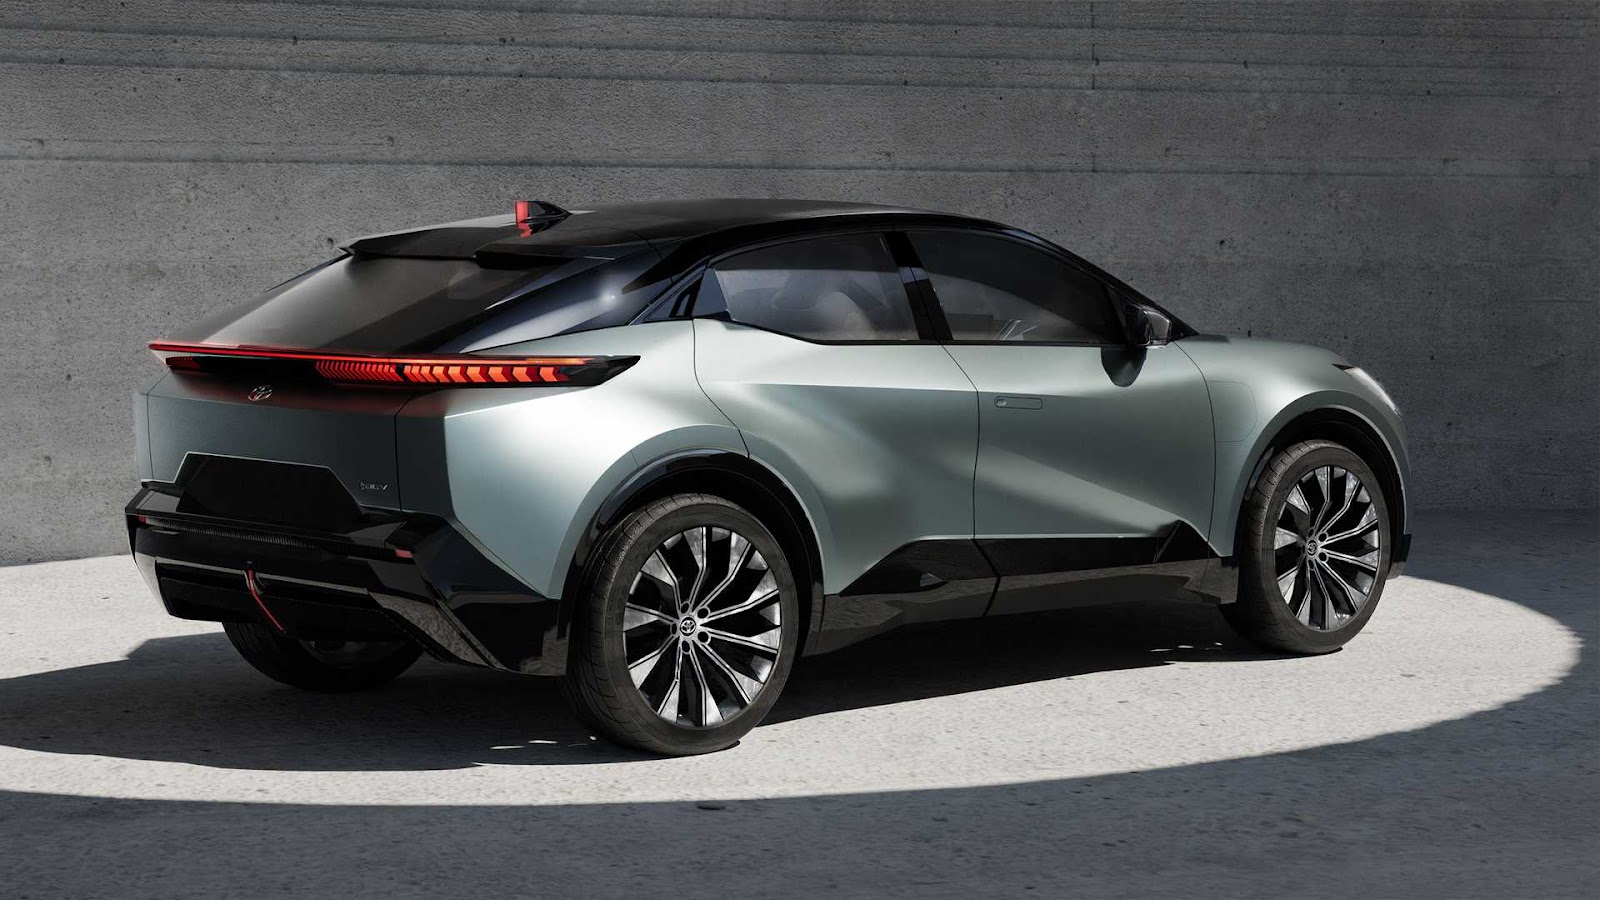 Toyota công bố một phần thông số, hình ảnh xe điện thứ 3 - Ảnh 3.